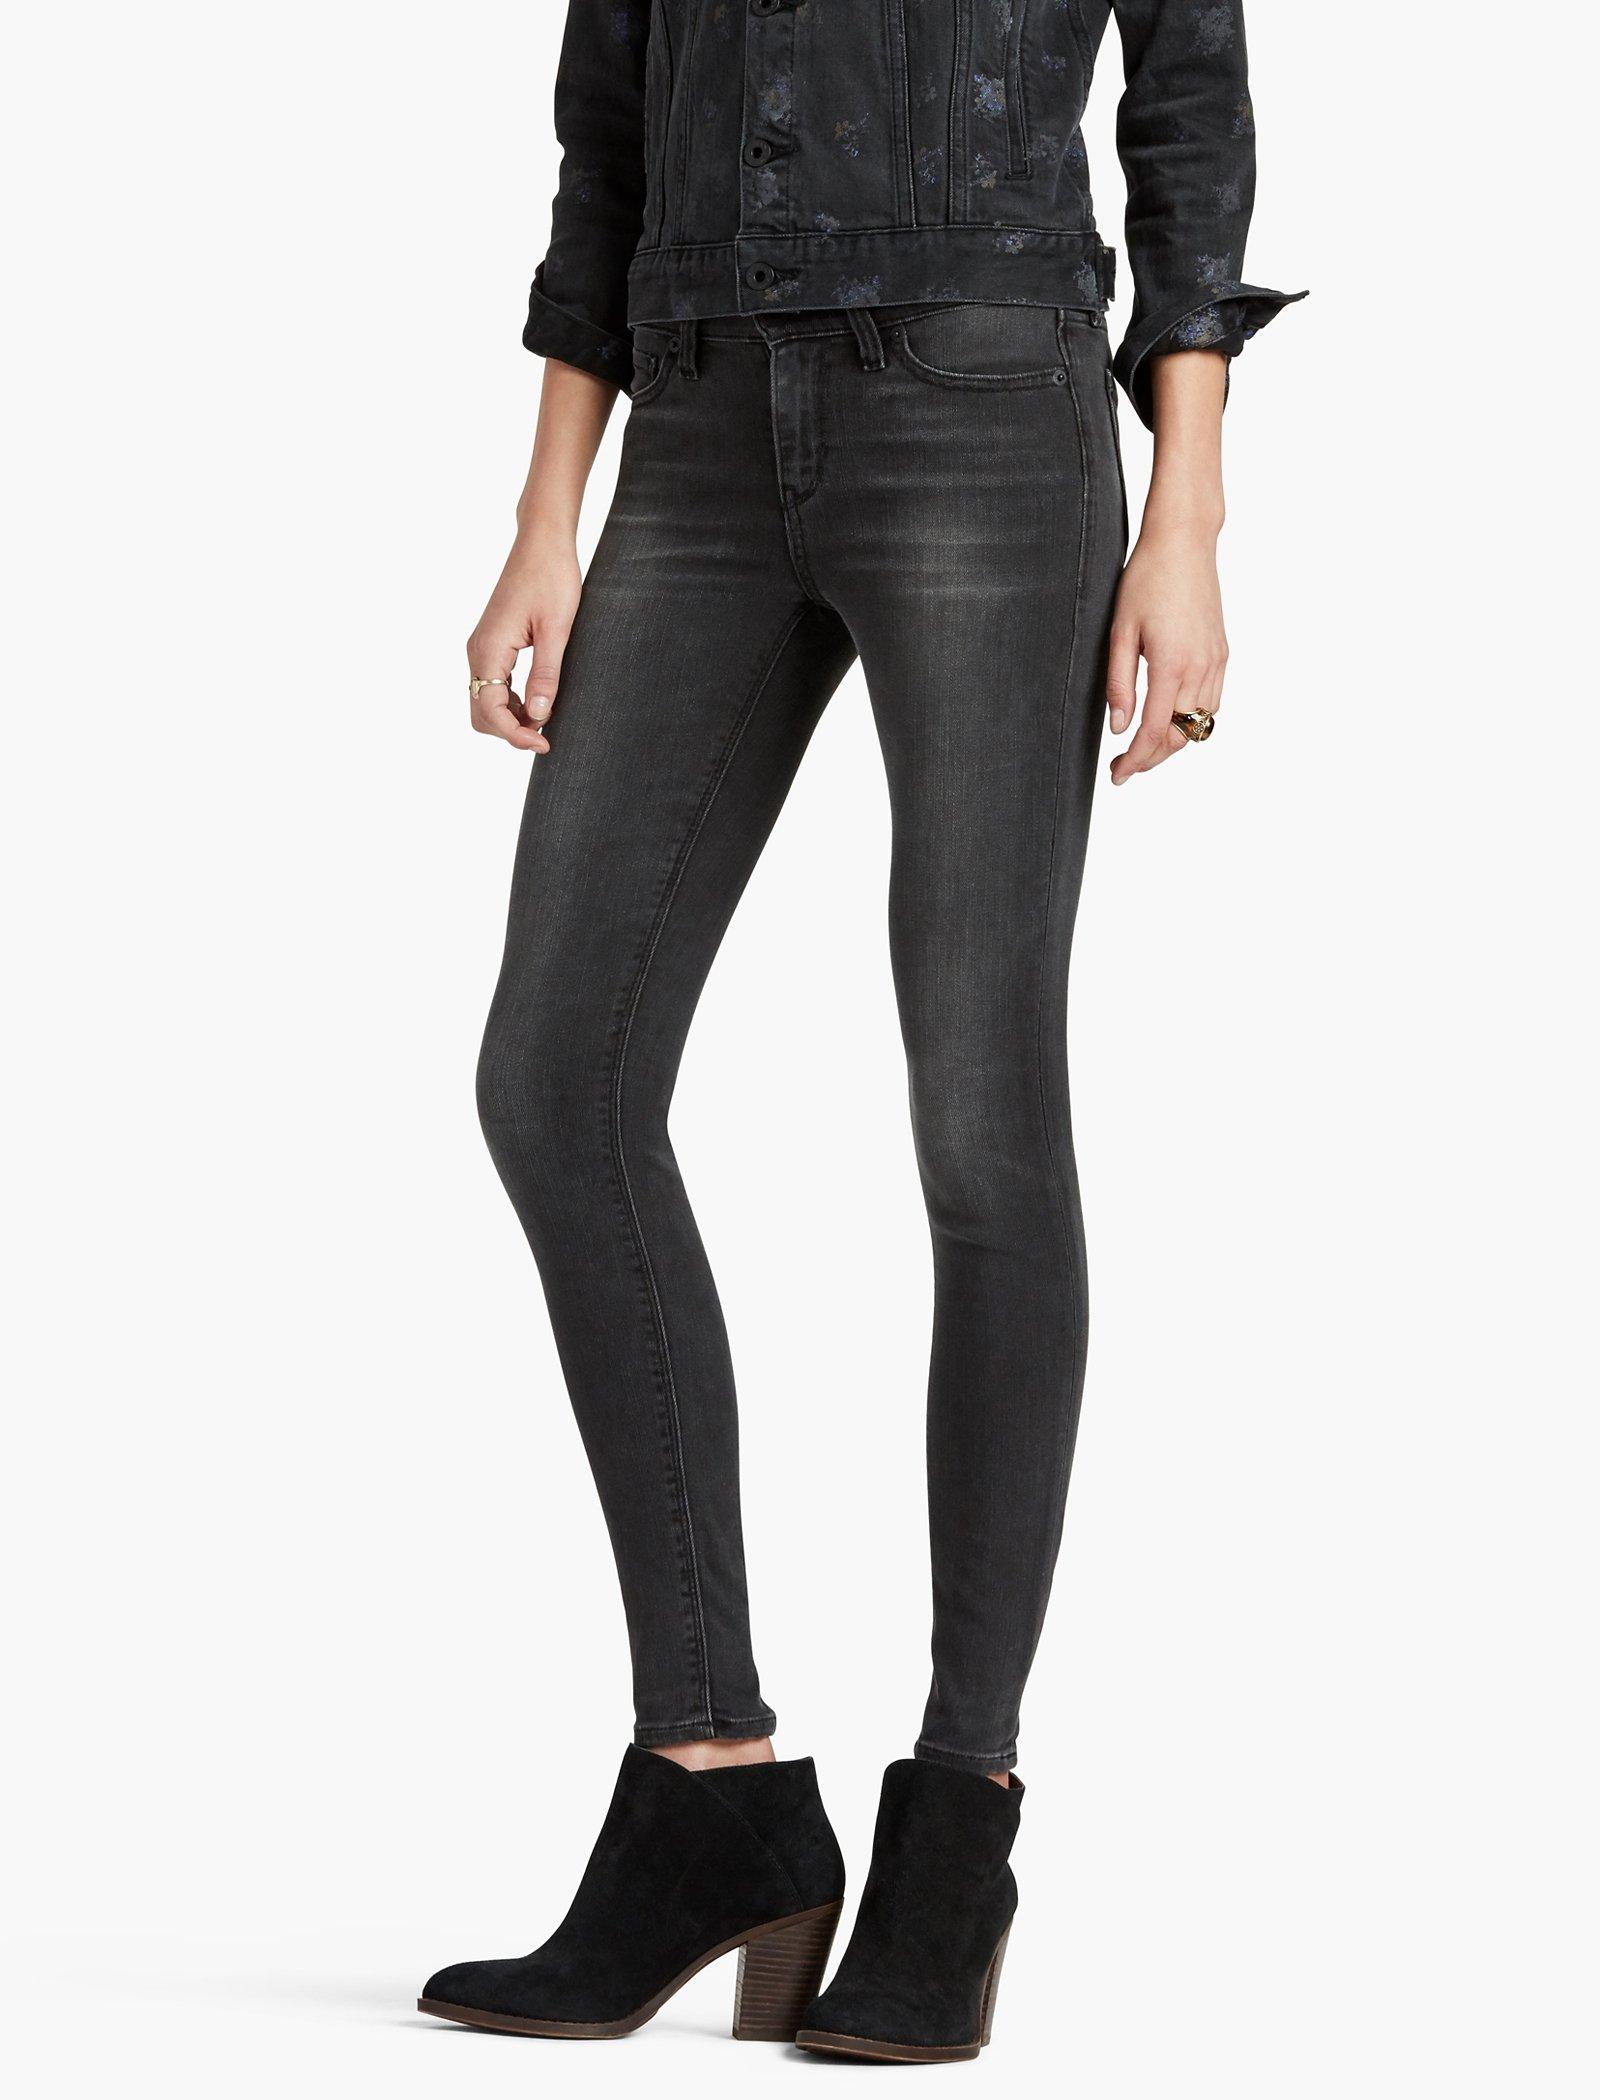 lucky brand brooke legging jean black